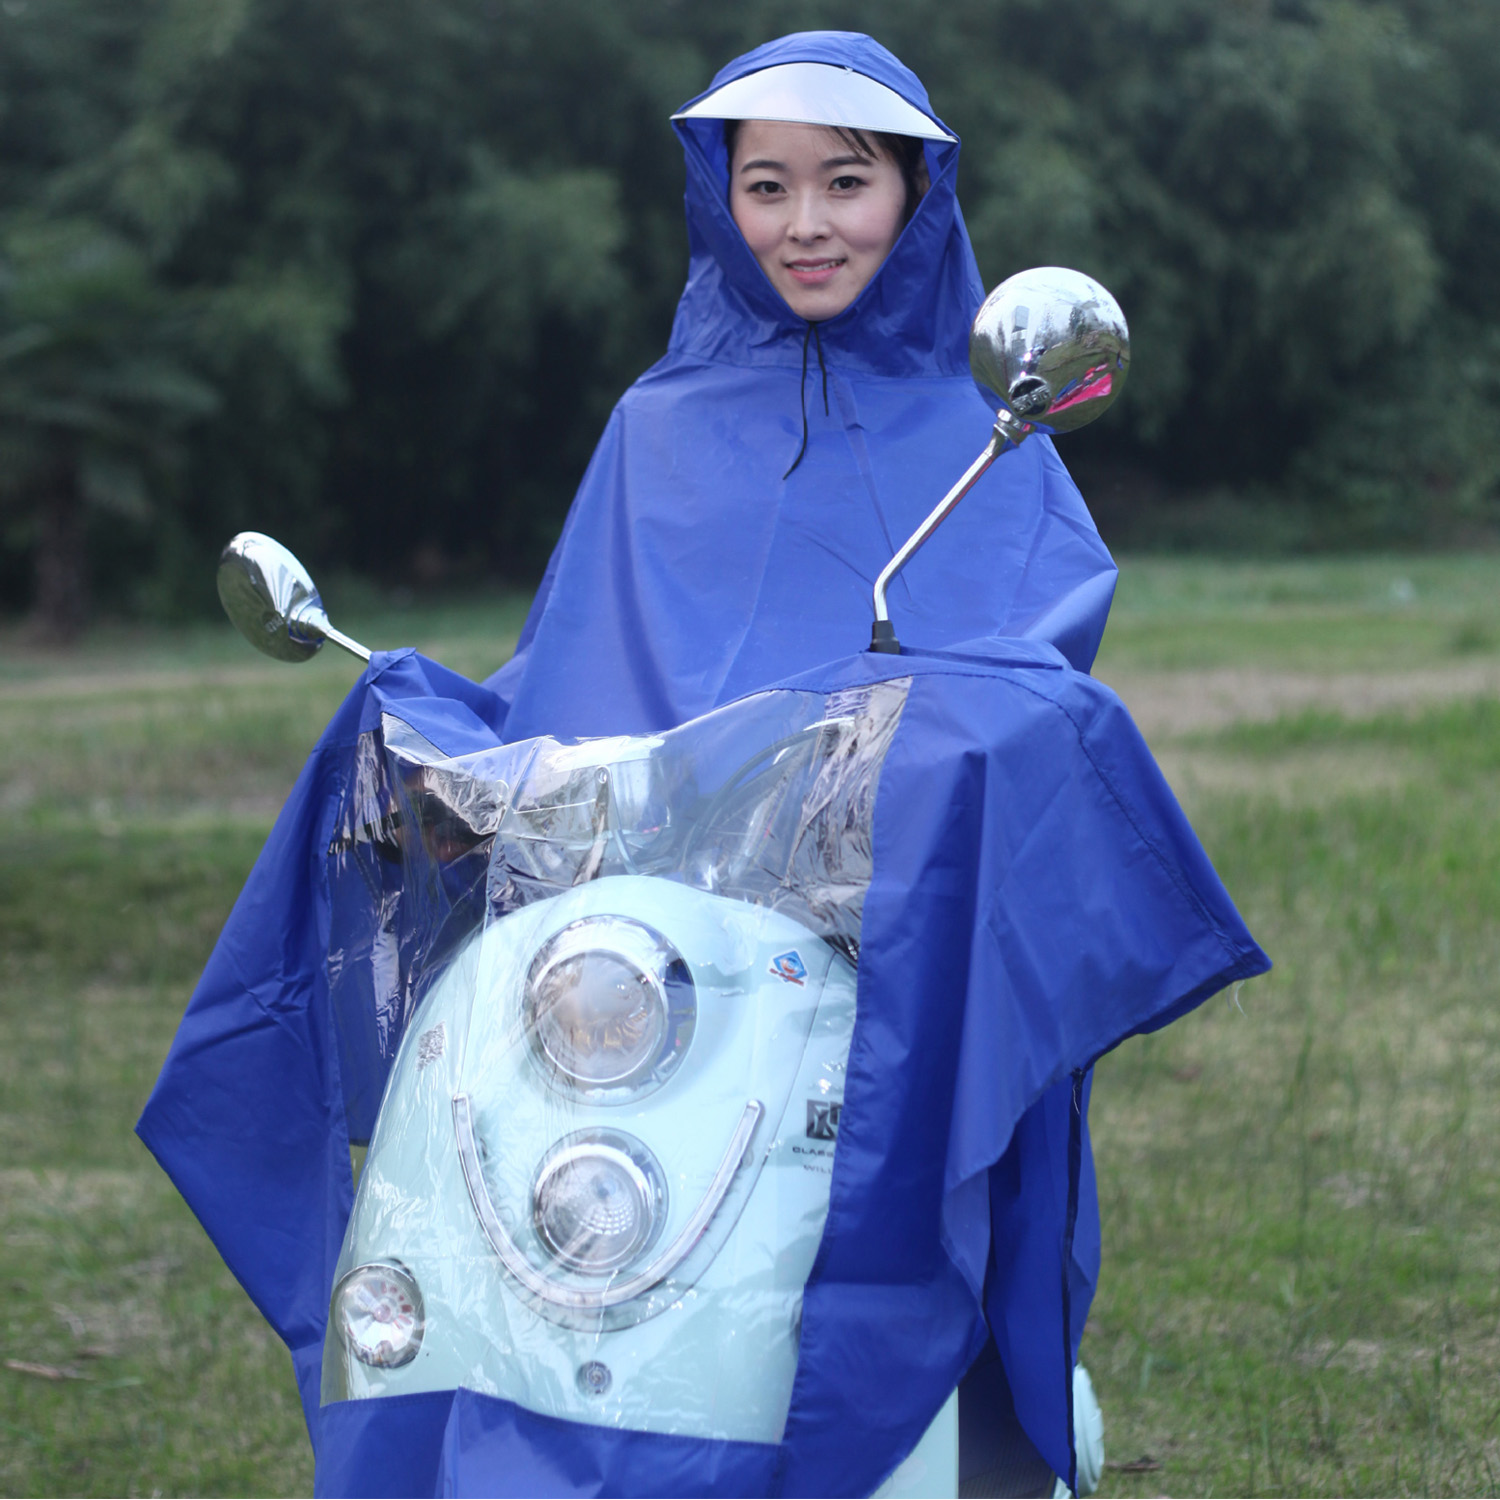 Behogar universal vandtæt hætteklædt regnfrakke regnkappe frakke poncho til mobilitet scootere motorcykel motorcykler blå